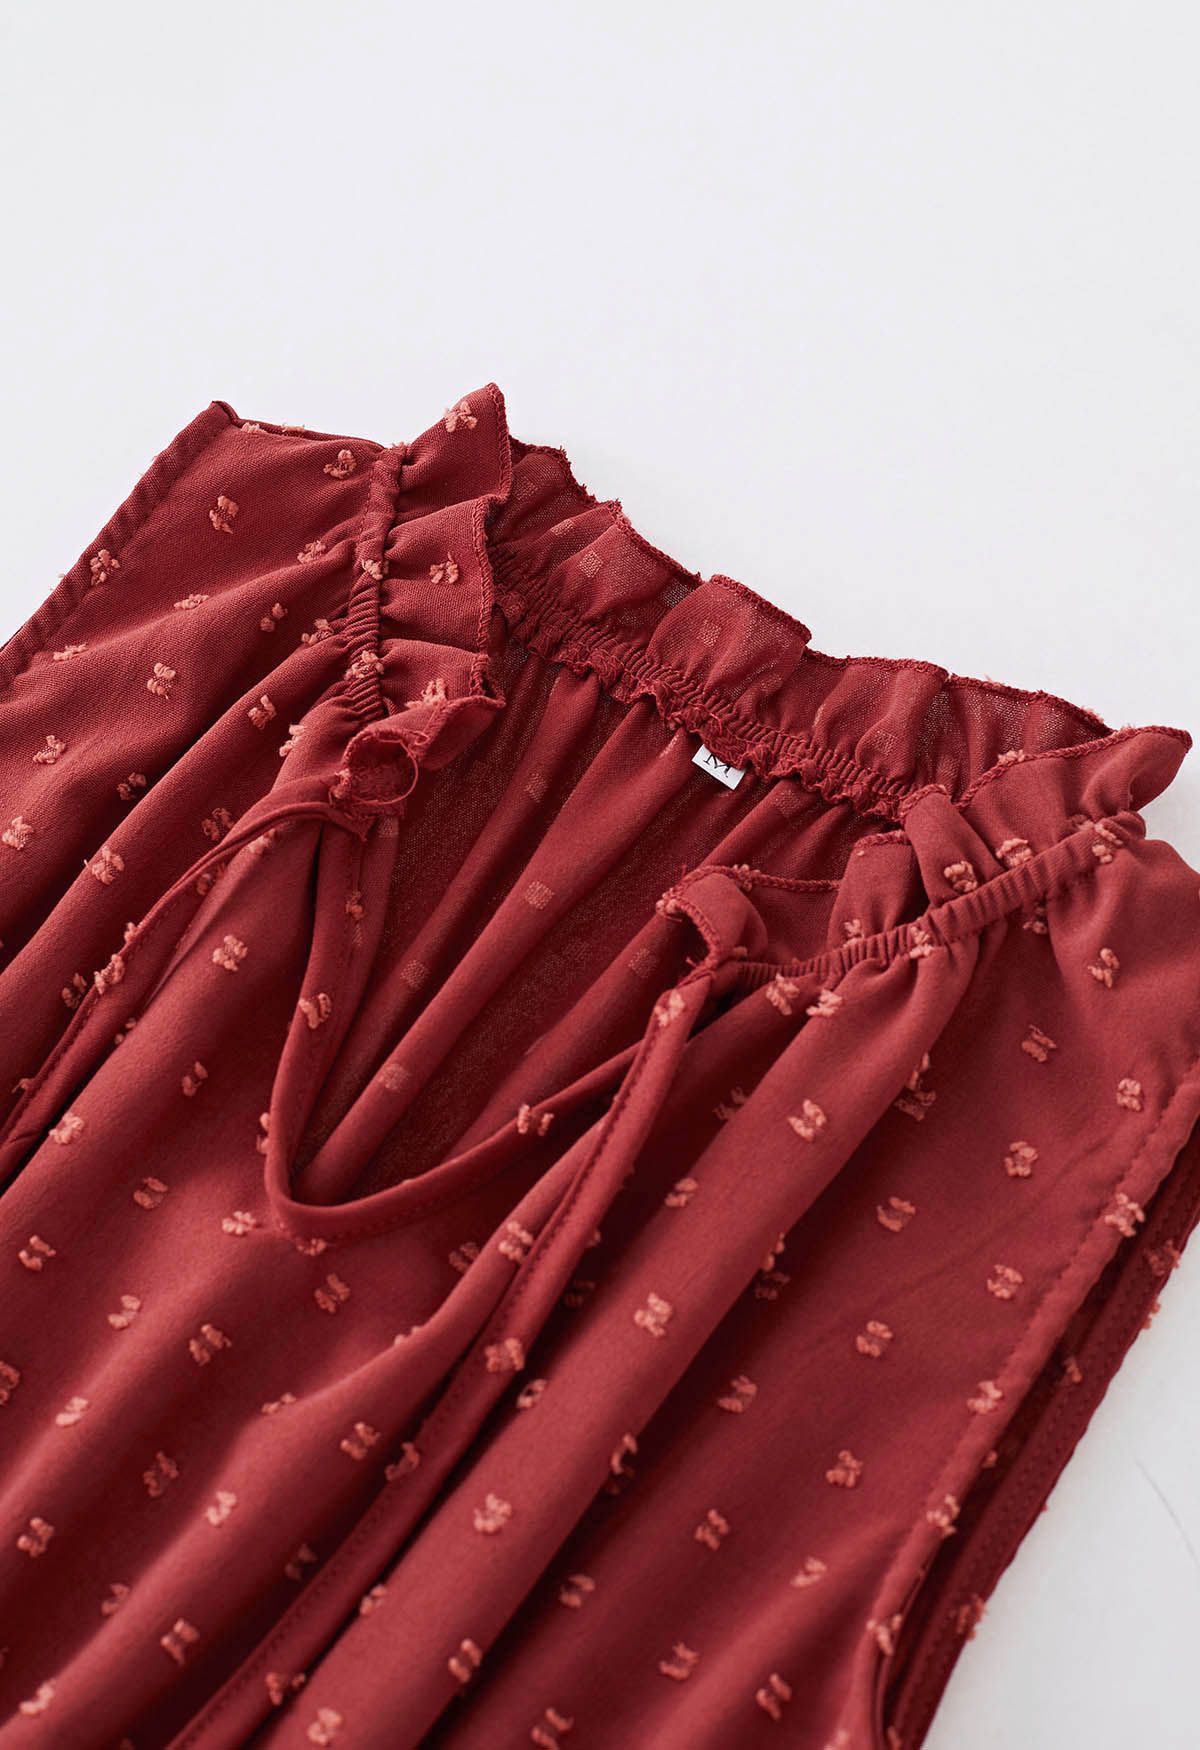 فستان بطيات منقّطة وربطة عنق باللون الأحمر الصدأ